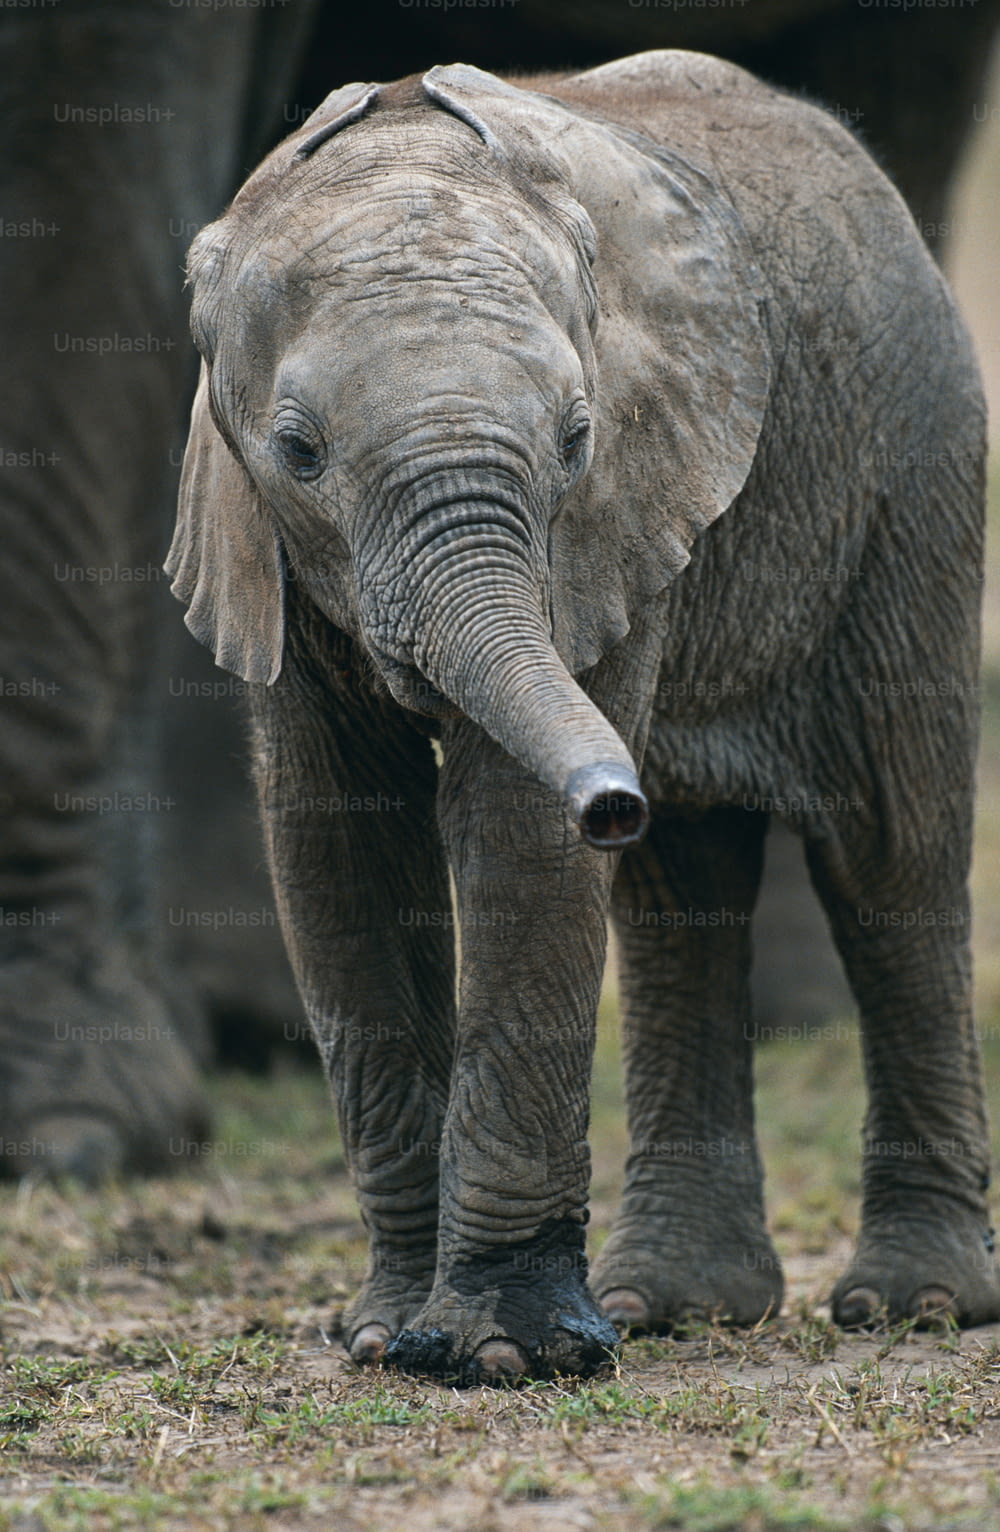 Un elefante beb�é de pie junto a un elefante adulto